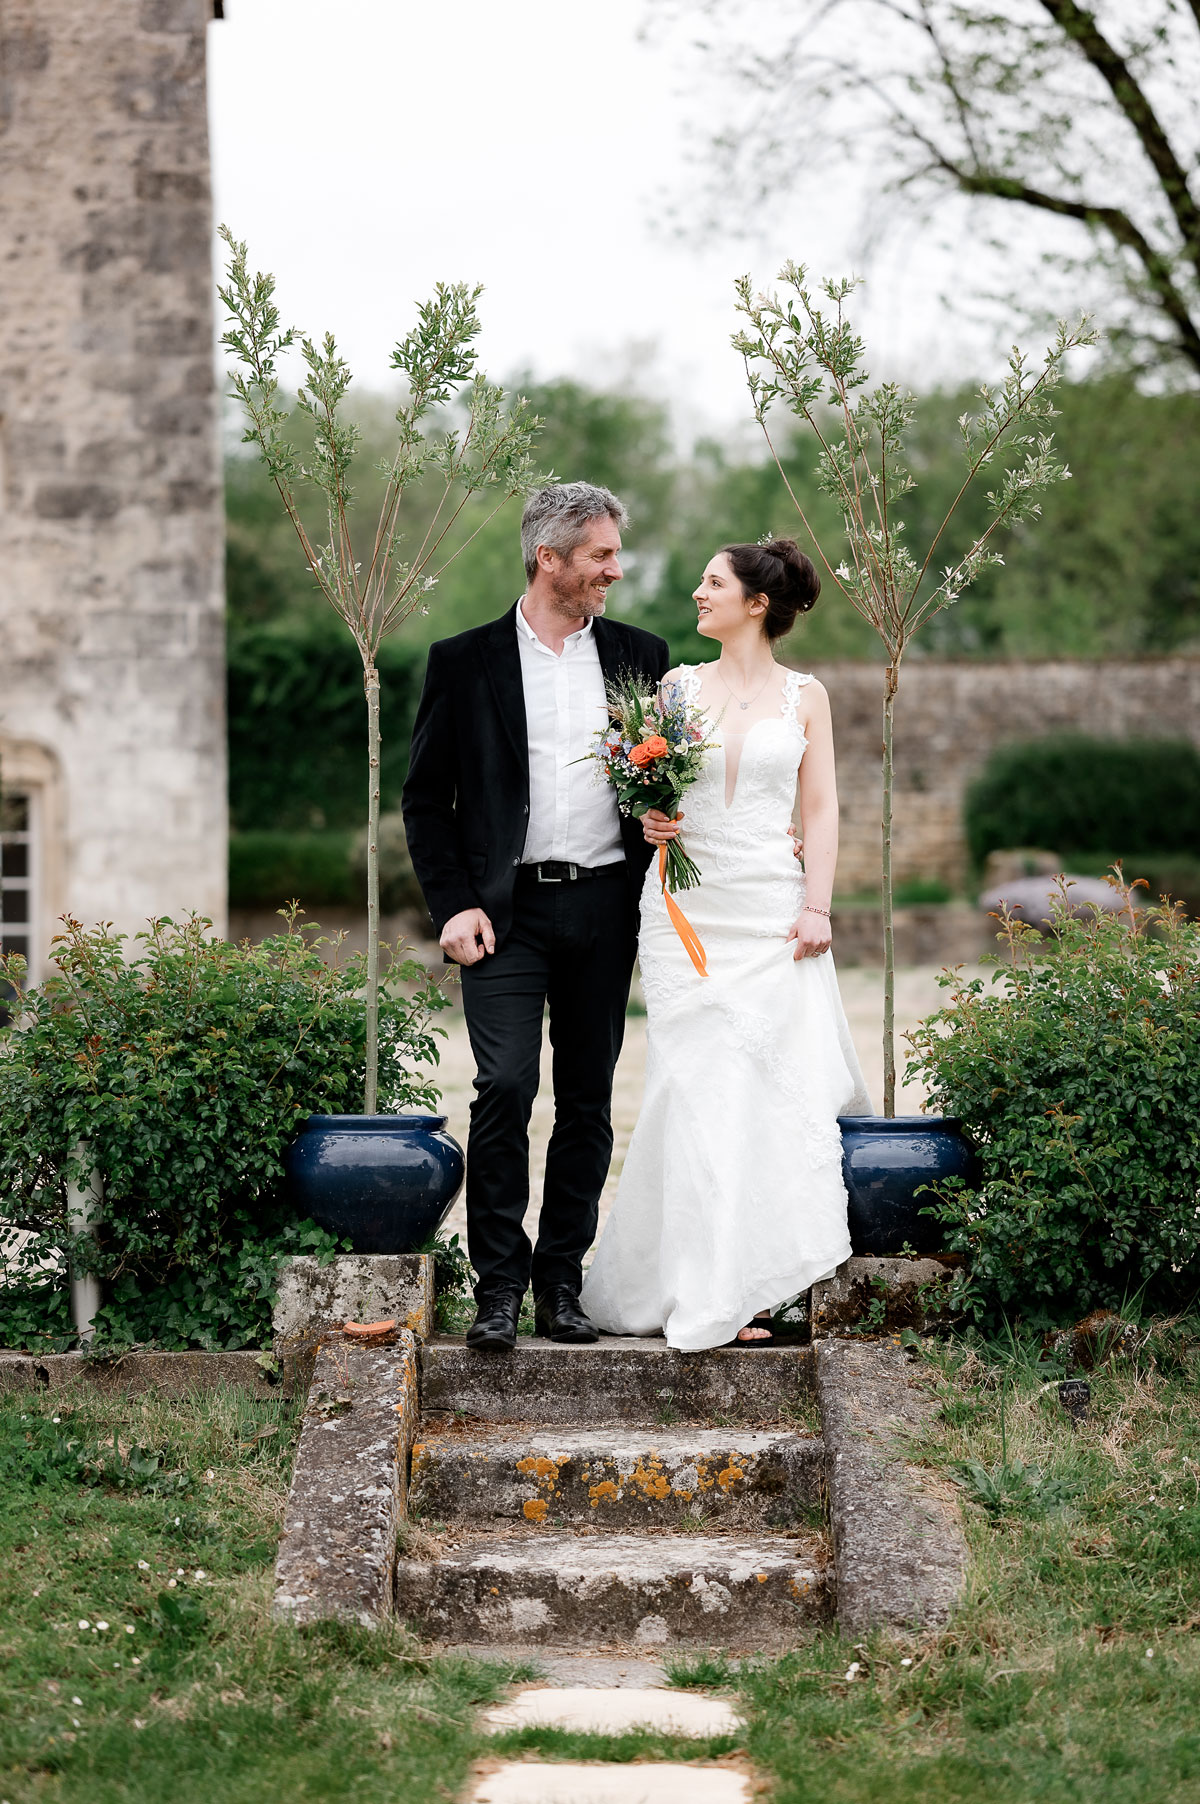 Lieux de réception de mariage en Charente Maritime avec un château proche de Saintes et Rochefort